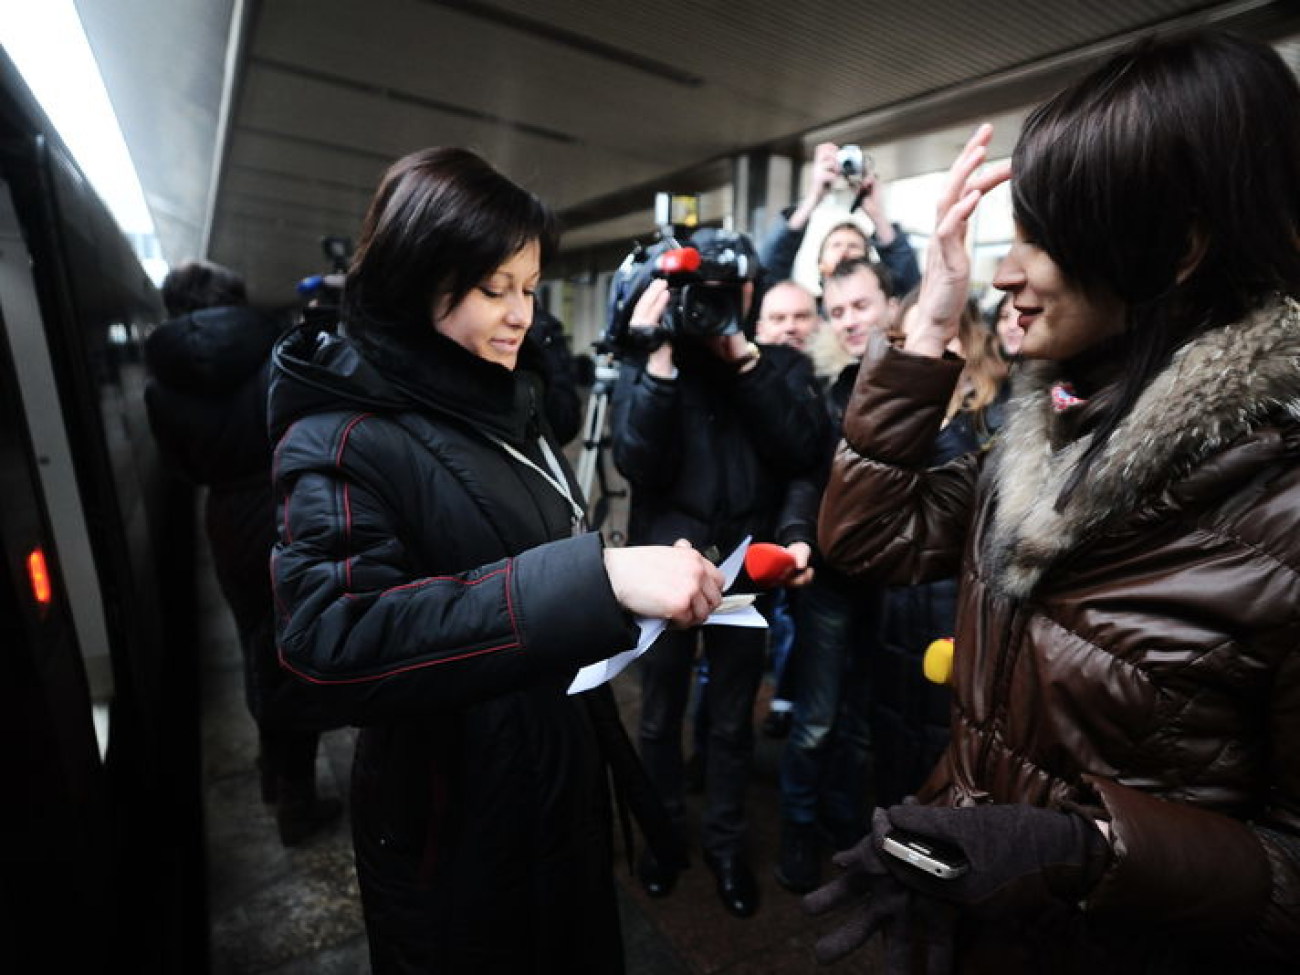 Украинская железная дорога презентовала электронные билеты, 6 февраля 2013г.